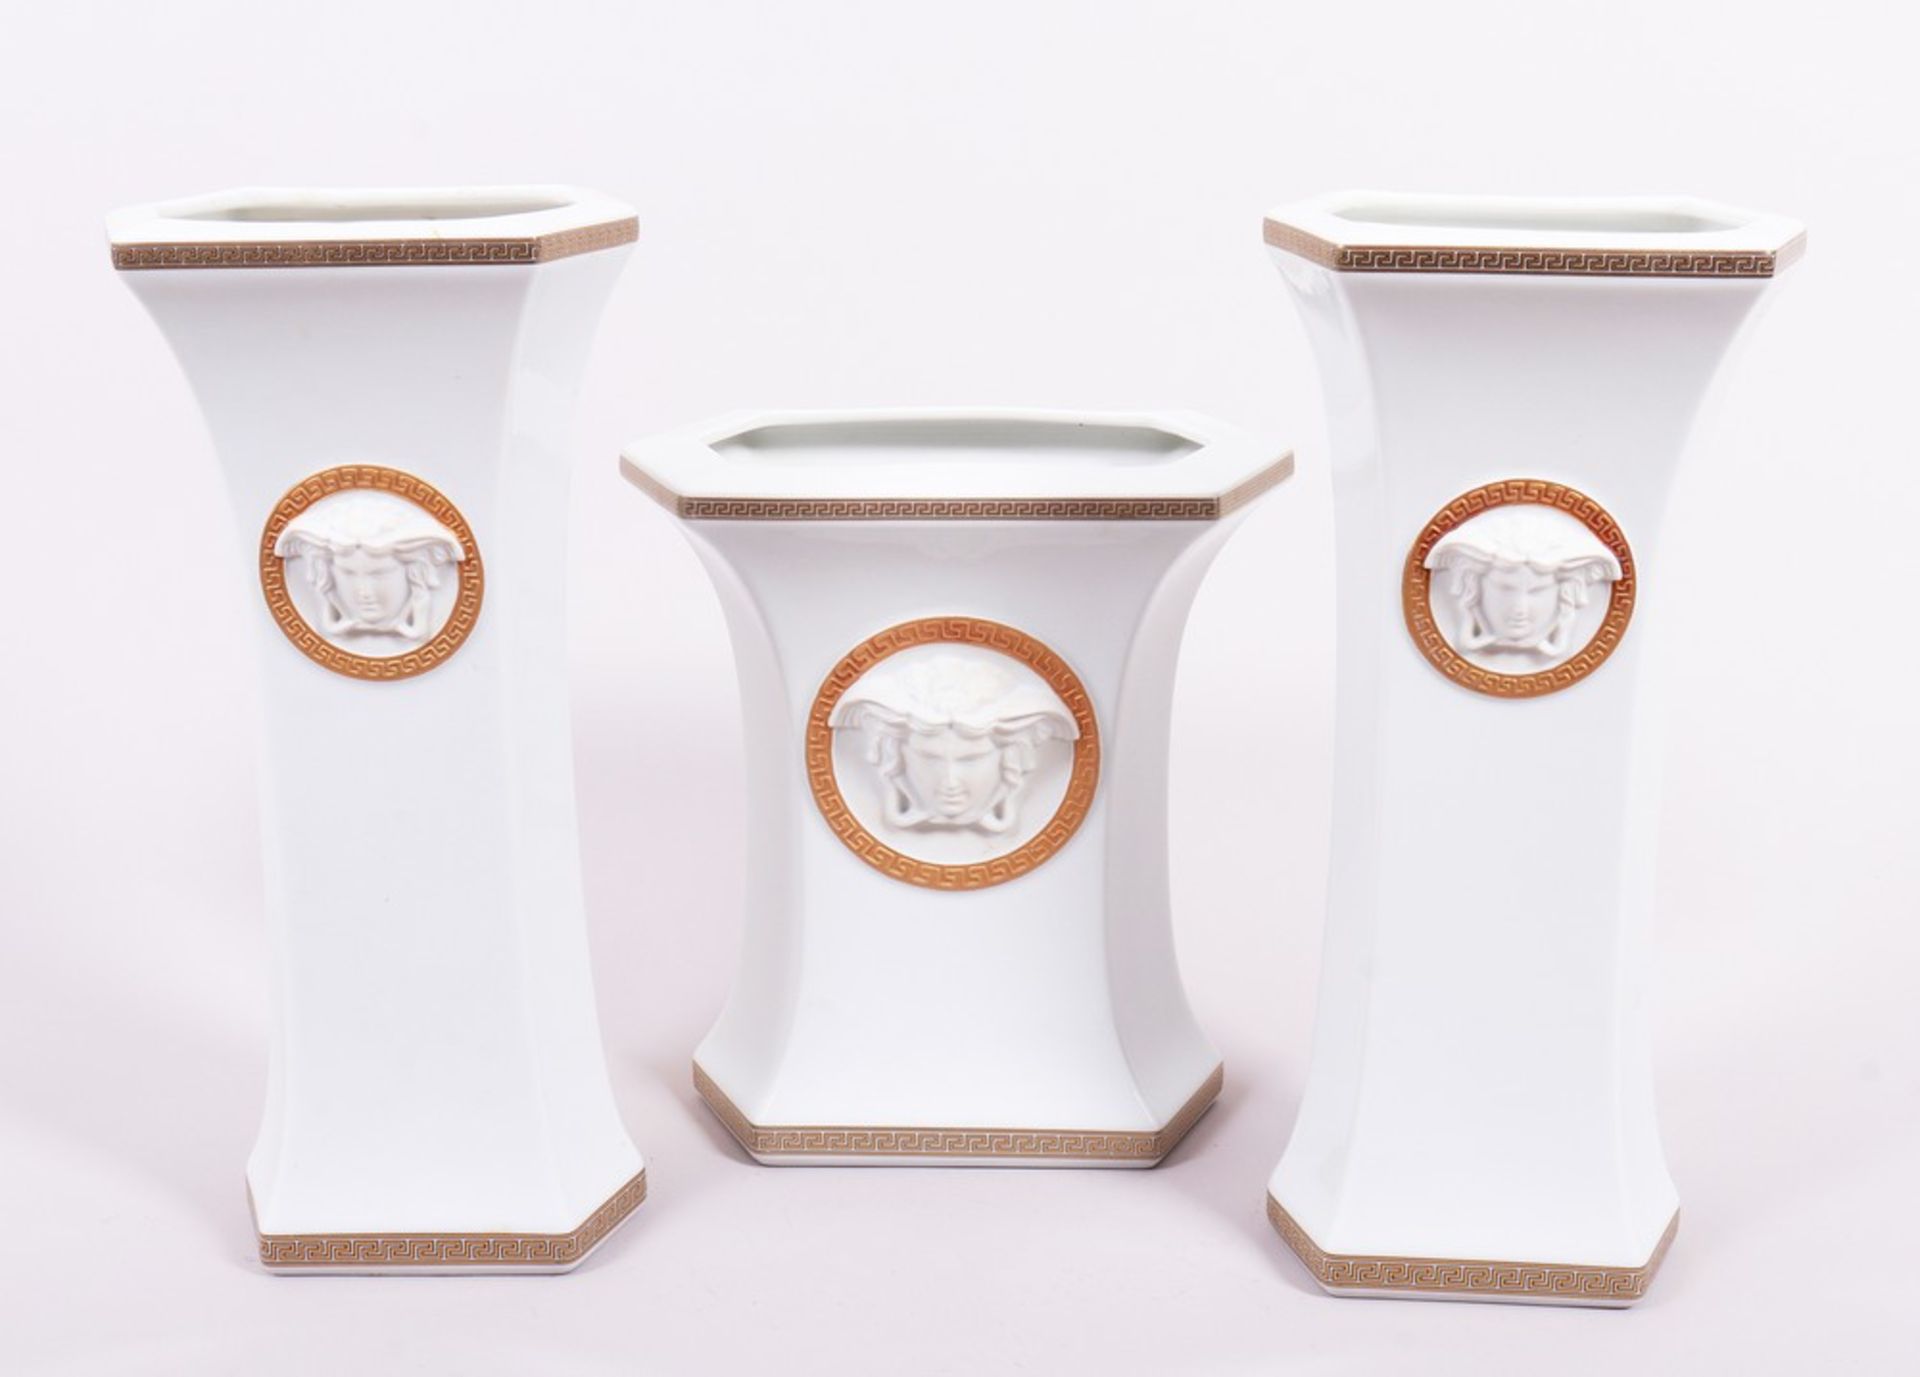 Vasen-Garnitur, Formentwurf "Ikarus" von Paul Wunderlich/ Dekor "Gorgona" von Gianni Versace für Ro - Bild 2 aus 8